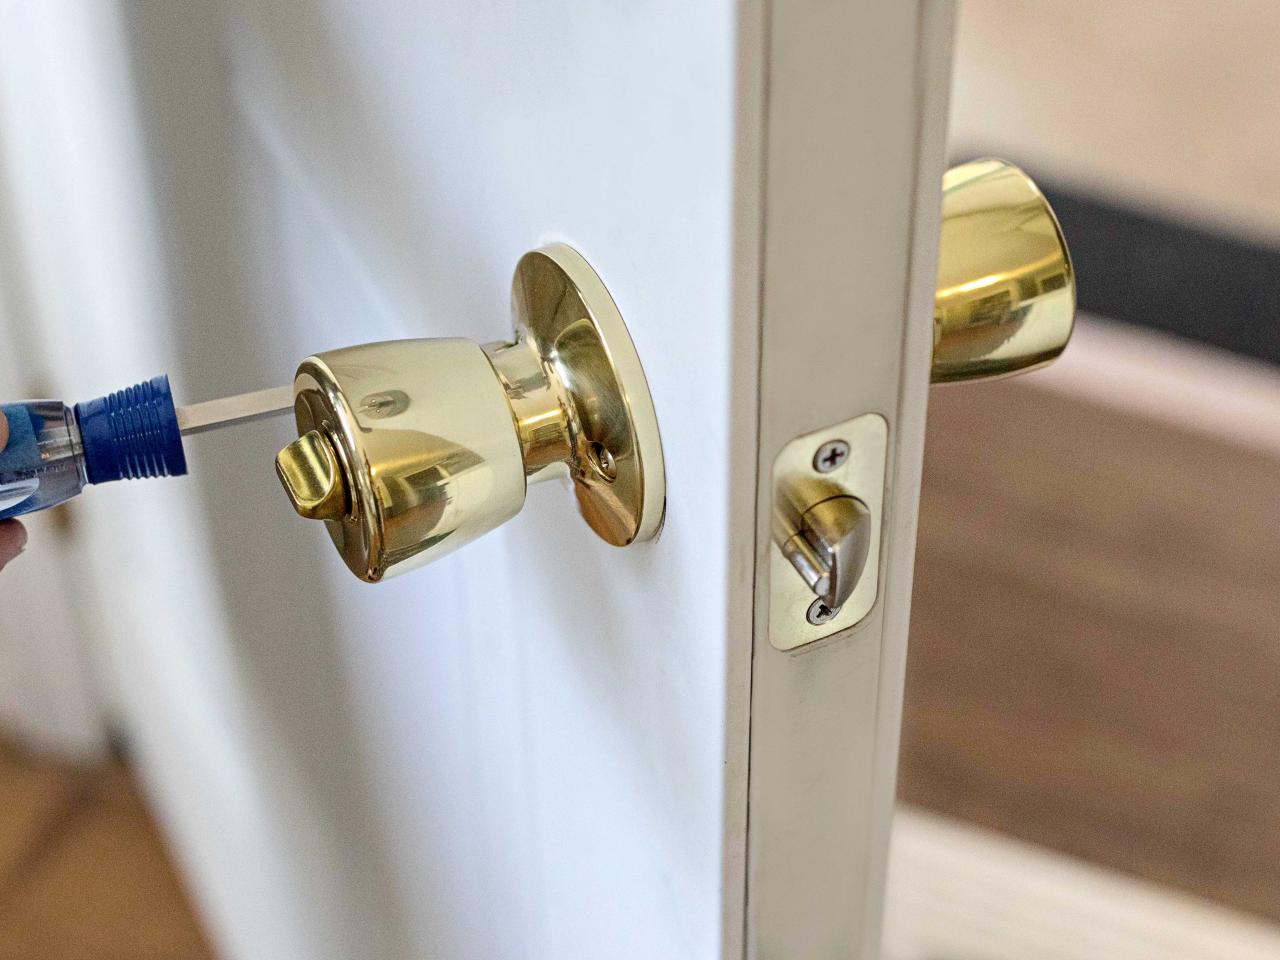 How To Remove A Door Knob - How To Install Bathroom Door Handle With Lock